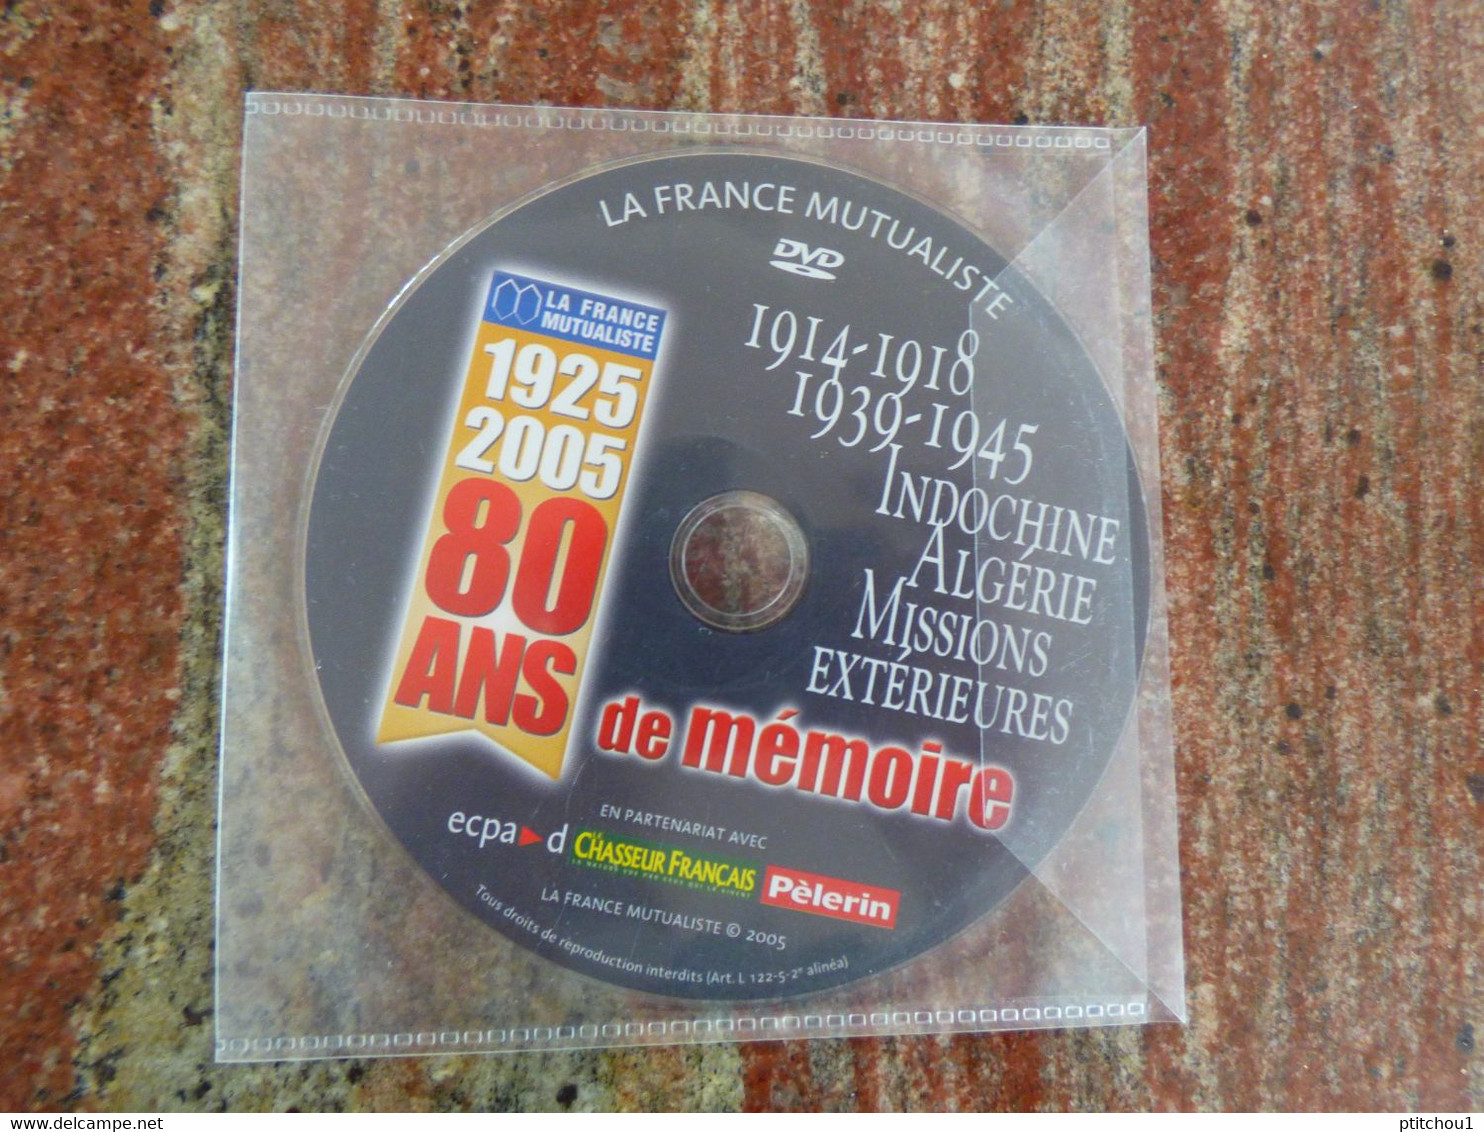 LA FRANCE MUTUALISTE 1925-2005 80 Ans De Mémoire 14-18, 39-45, Indochine, Algérie, Missions Extérieures - Documentaires